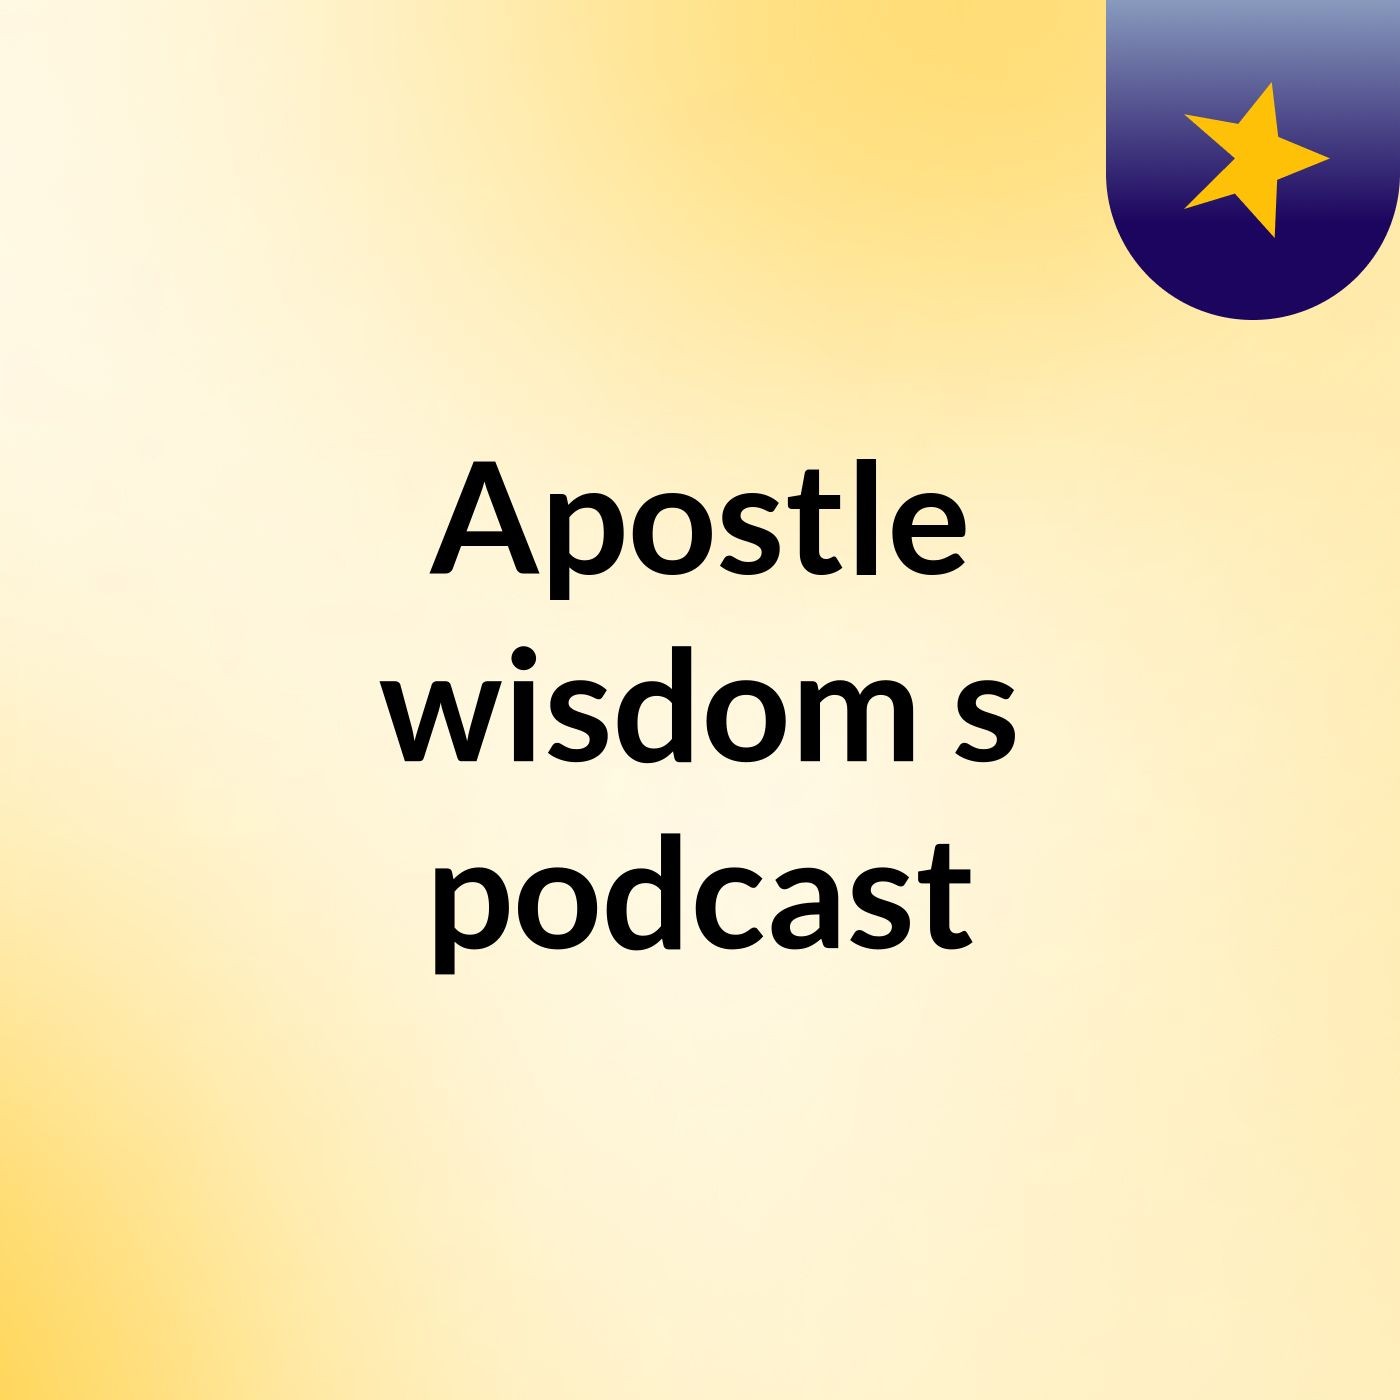 Episode 2 - Apostle wisdom's podcast